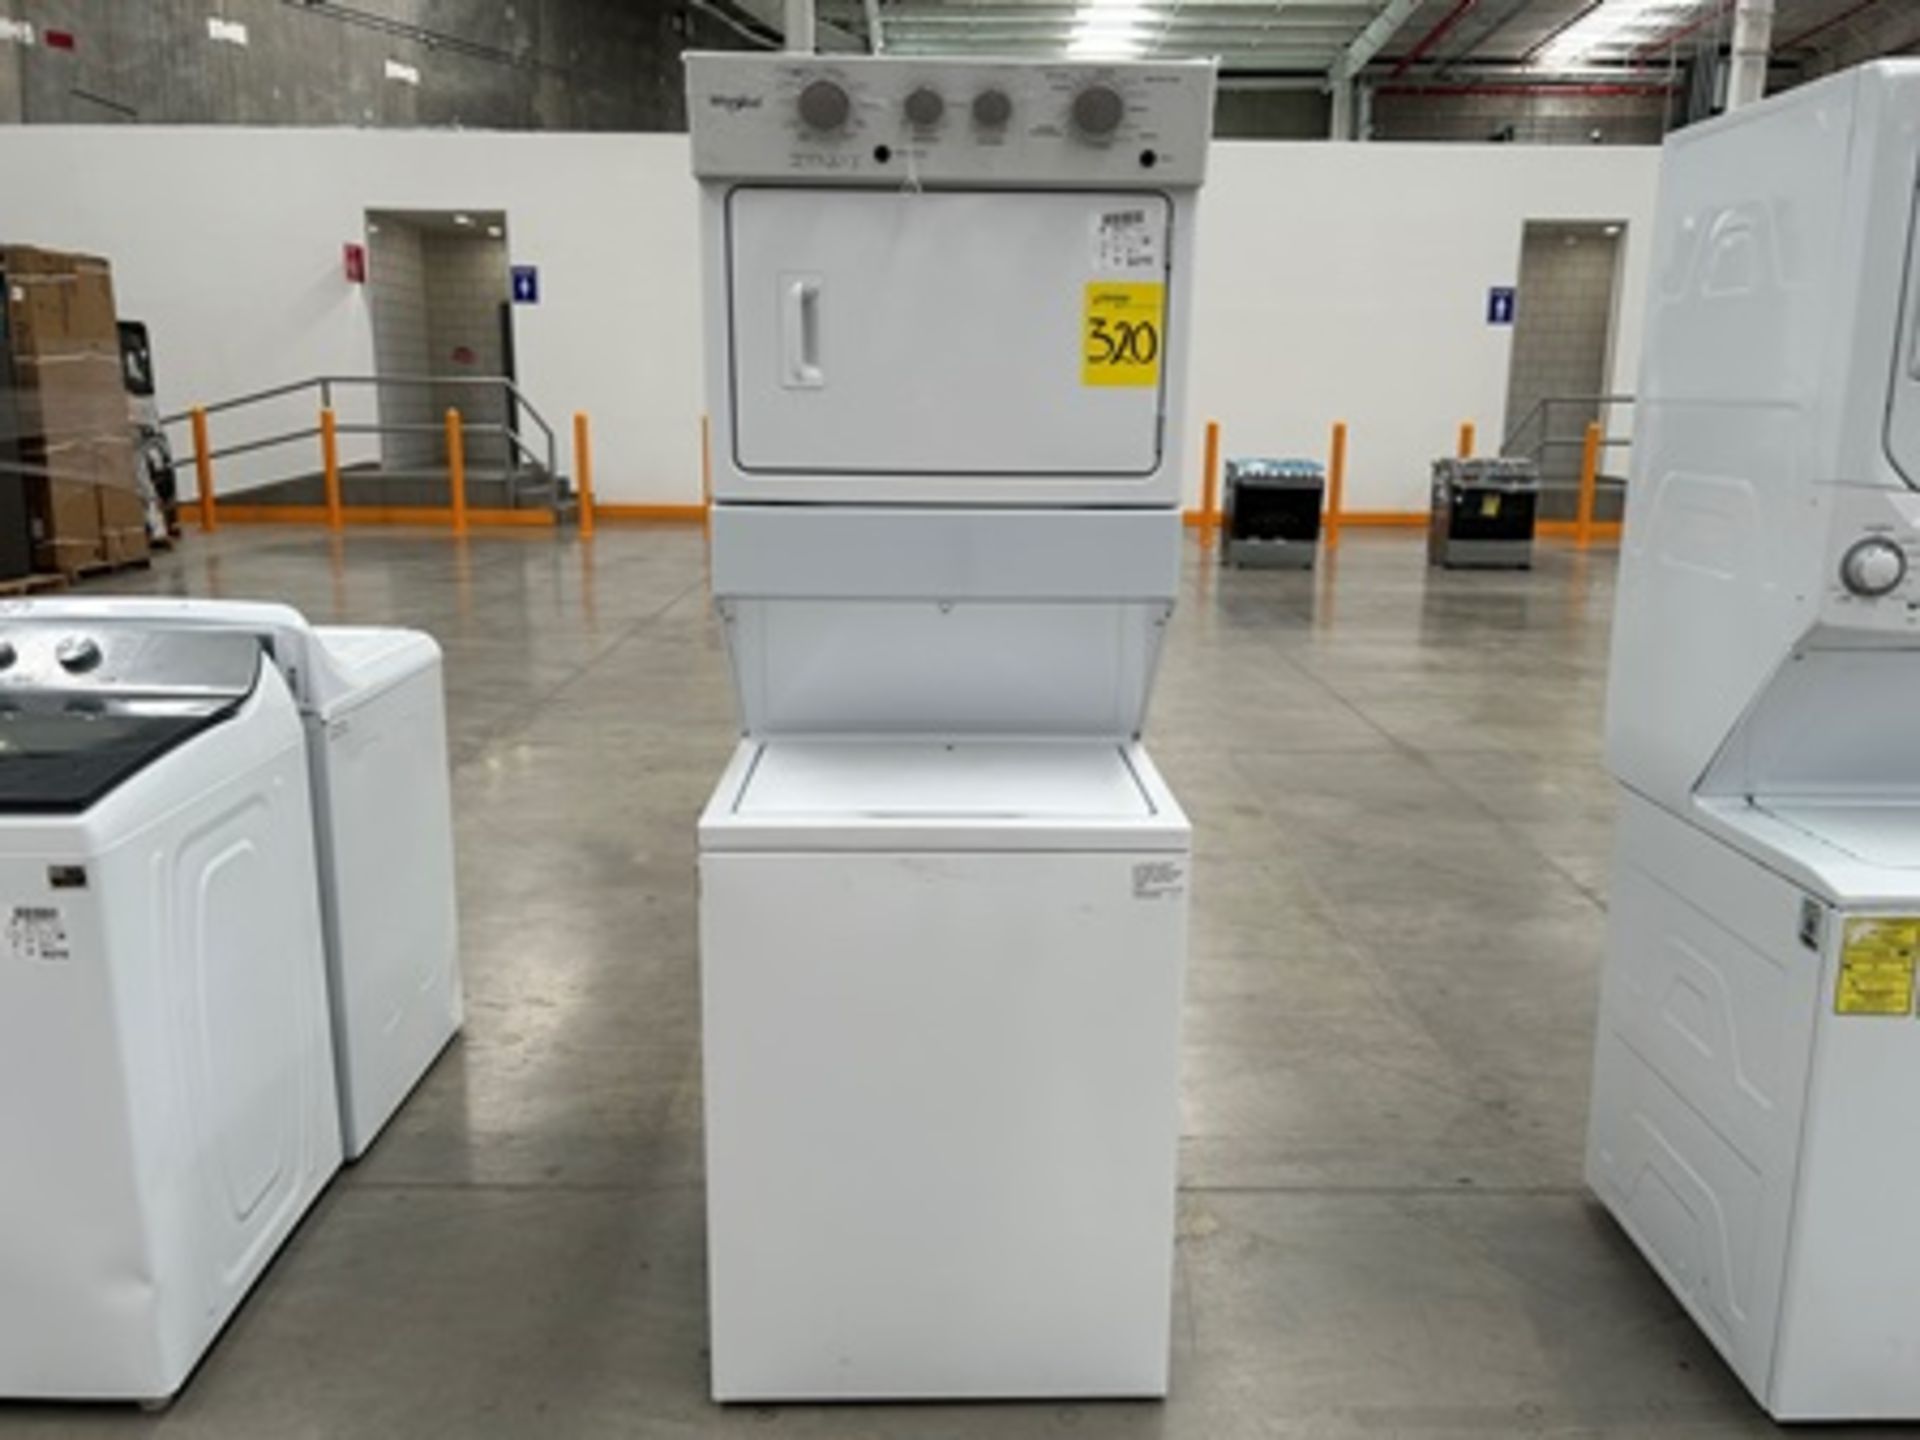 1 centro de lavado Marca WHIRPOOL, Modelo 7MWGT4027HW2, Serie 07640, Color Blanco (Equipo de devolu